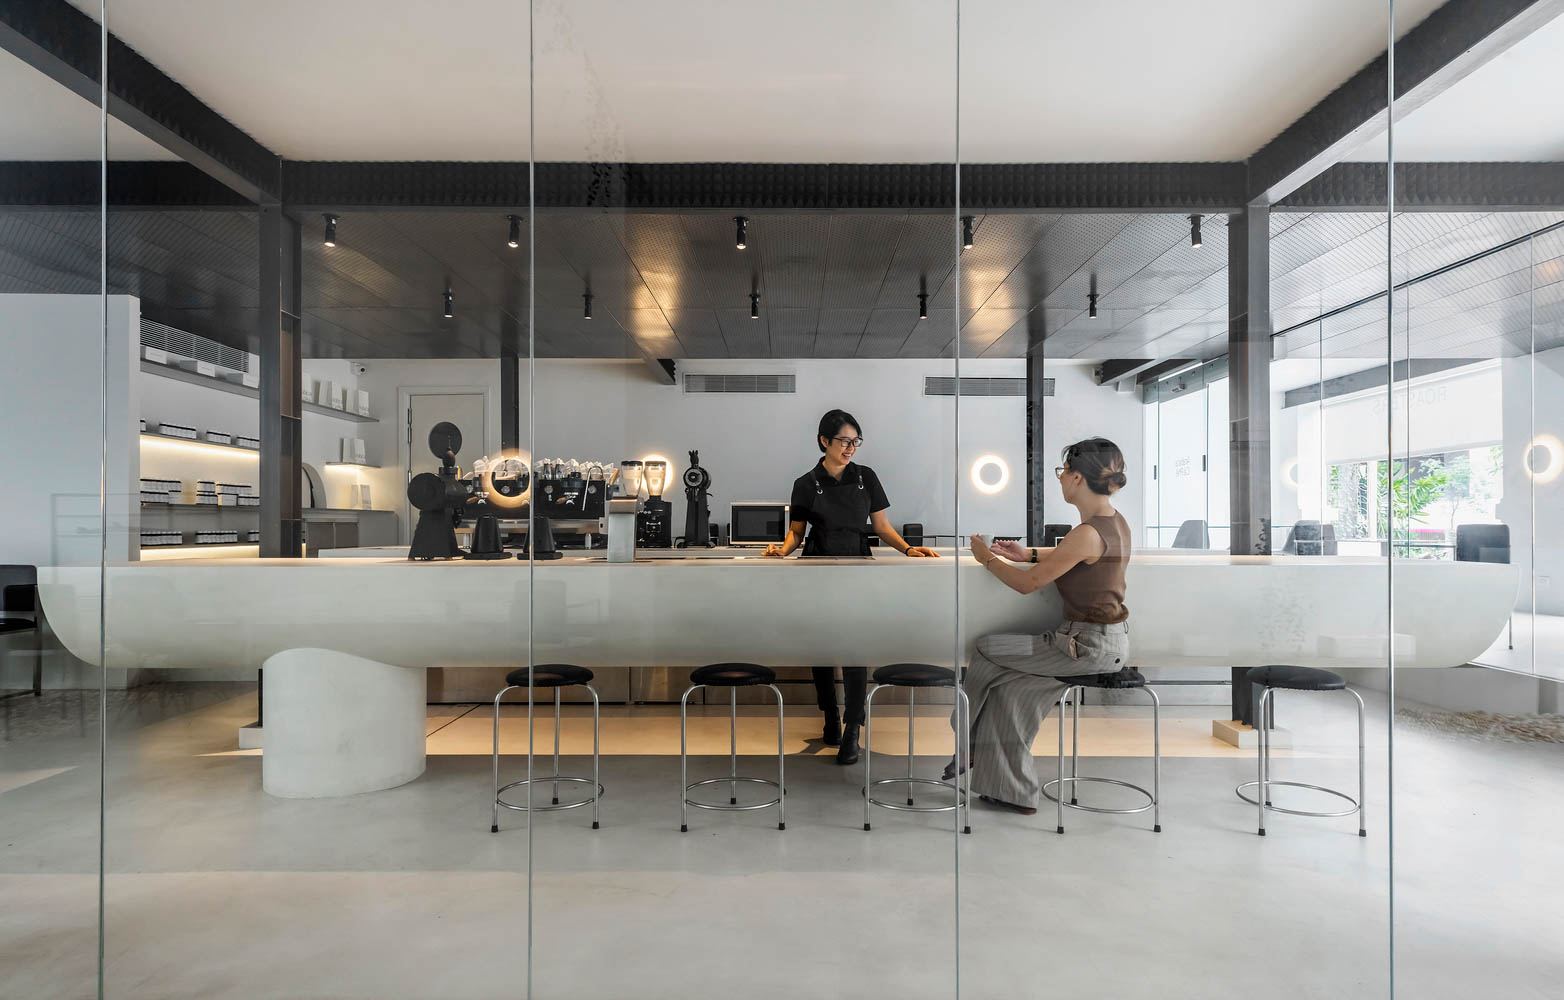 Cách lựa chọn màu sắc phù hợp cho thiết kế quán cafe phong cách Industrial